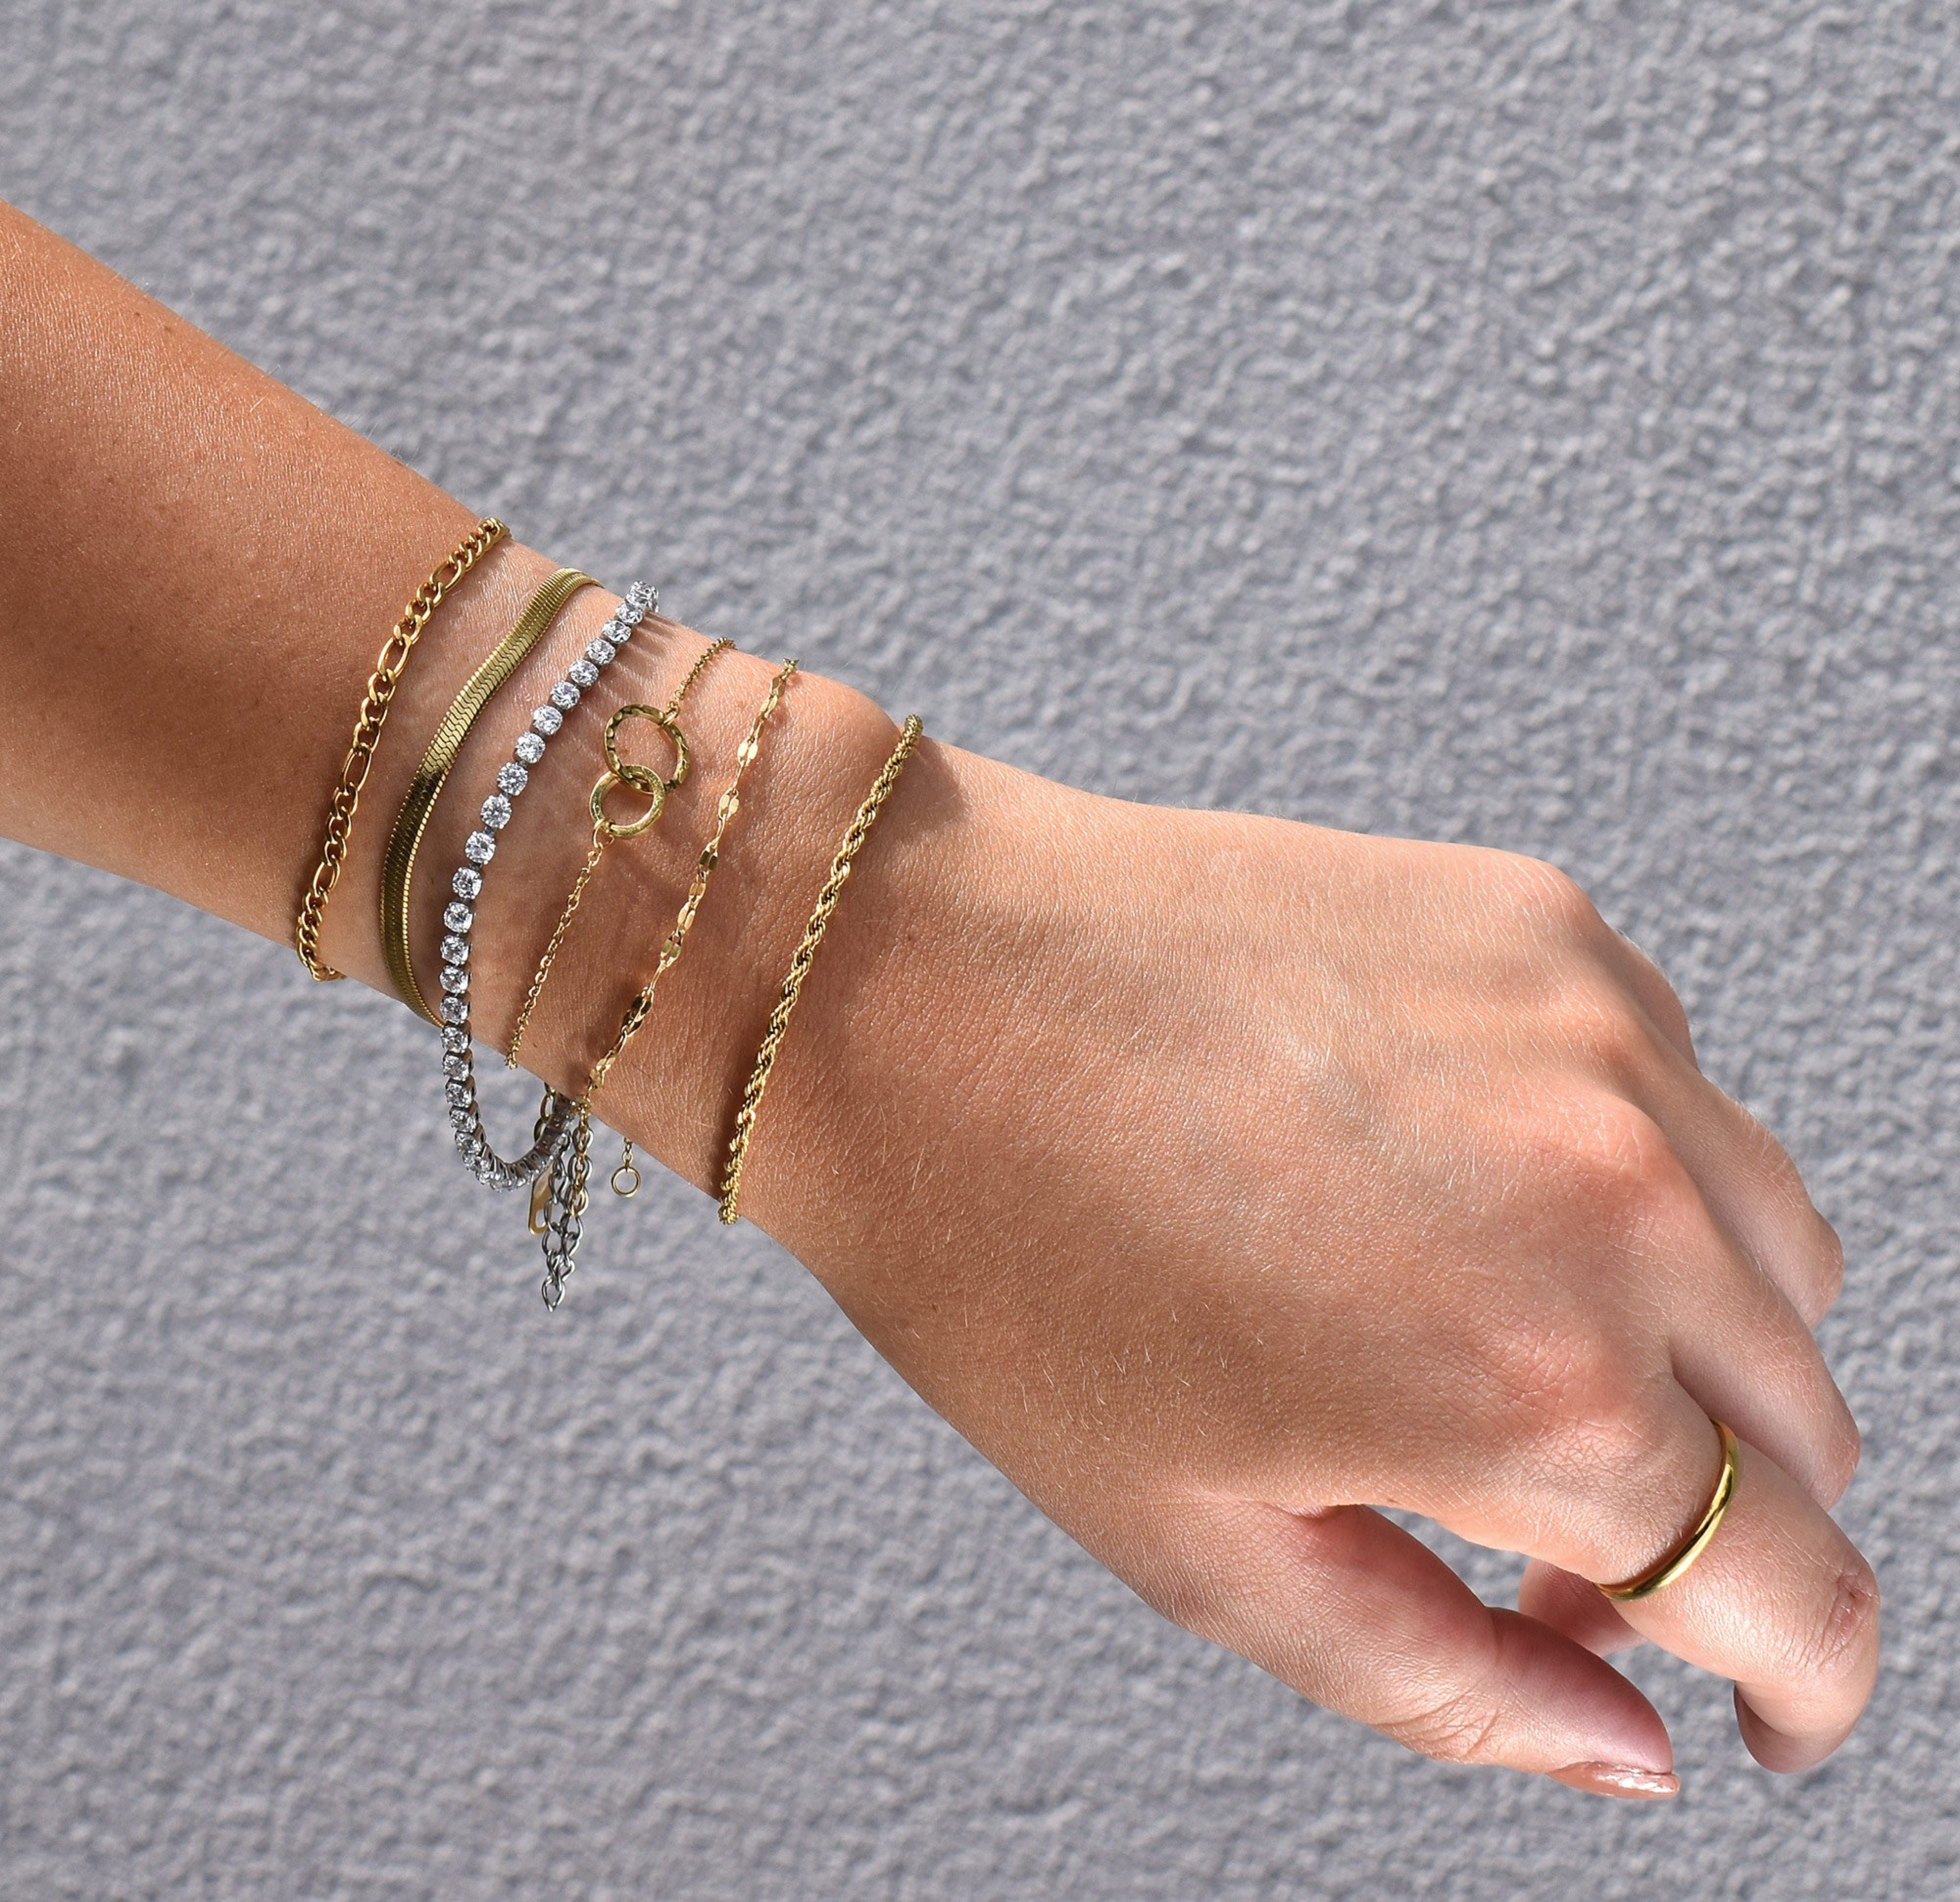 dainty gold unity link bracelet waterproof jewelry tarnish free bracelet stack worn on model